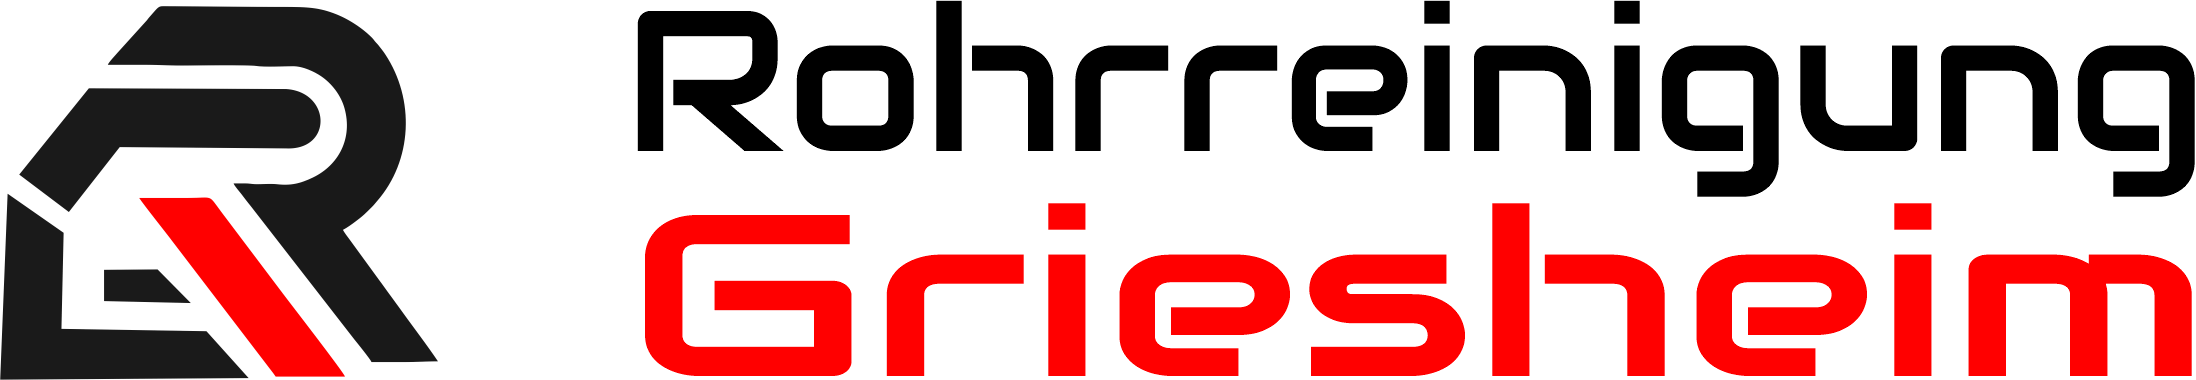 Rohrreinigung Griesheim Logo